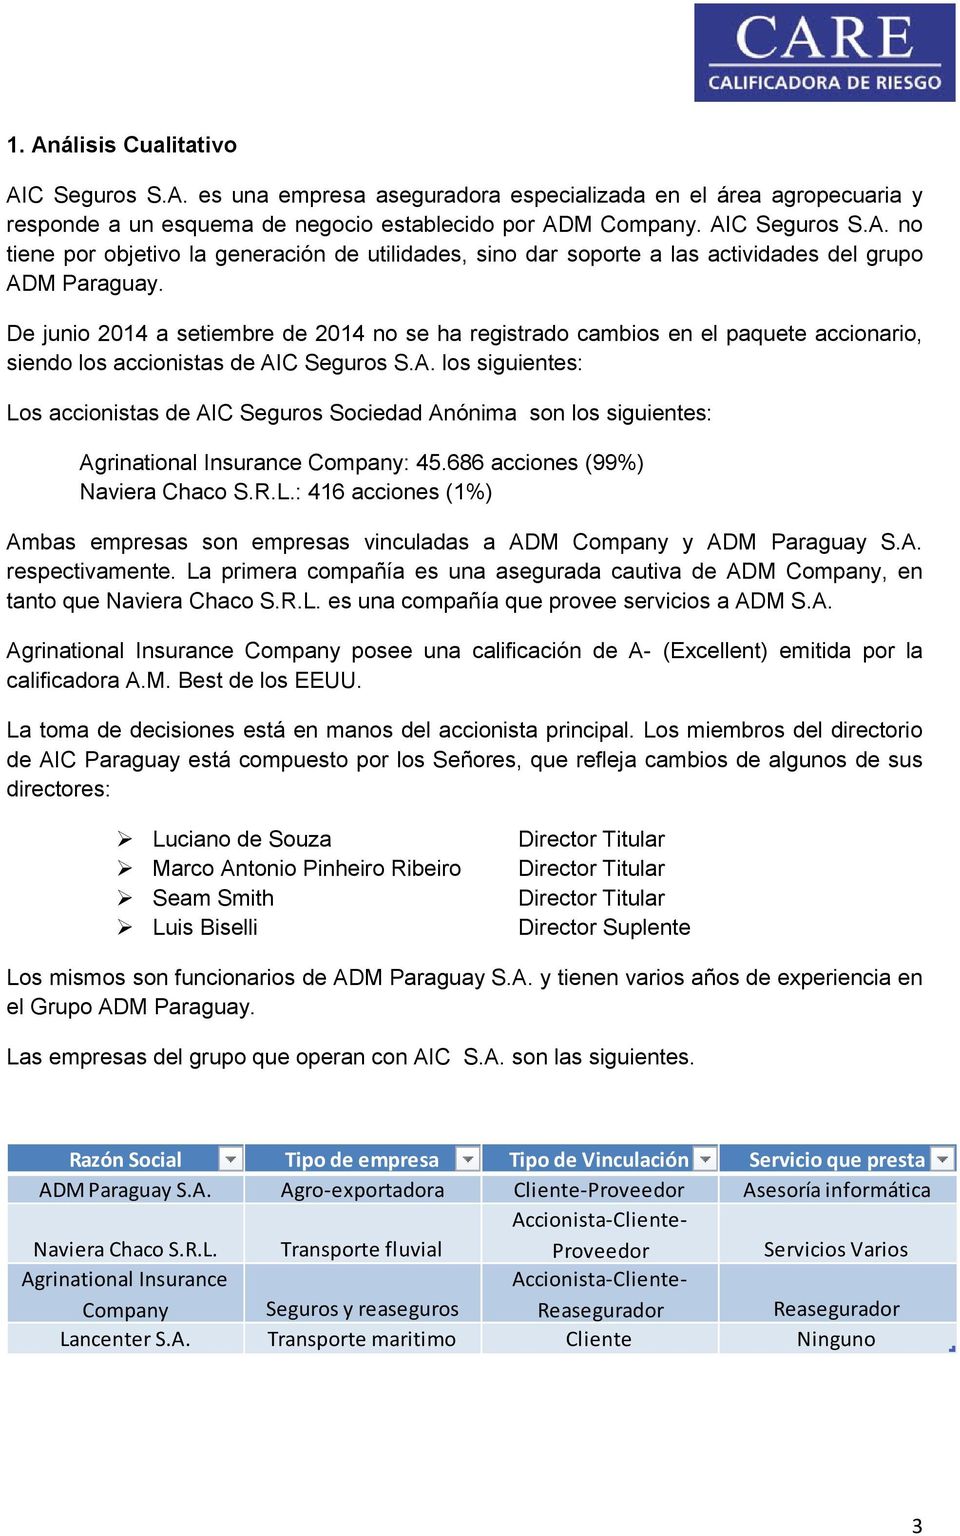 C Seguros S.A. los siguientes: Los accionistas de AIC Seguros Sociedad Anónima son los siguientes: Agrinational Insurance Company: 45.686 acciones (99%) Naviera Chaco S.R.L.: 416 acciones (1%) Ambas empresas son empresas vinculadas a ADM Company y ADM Paraguay S.